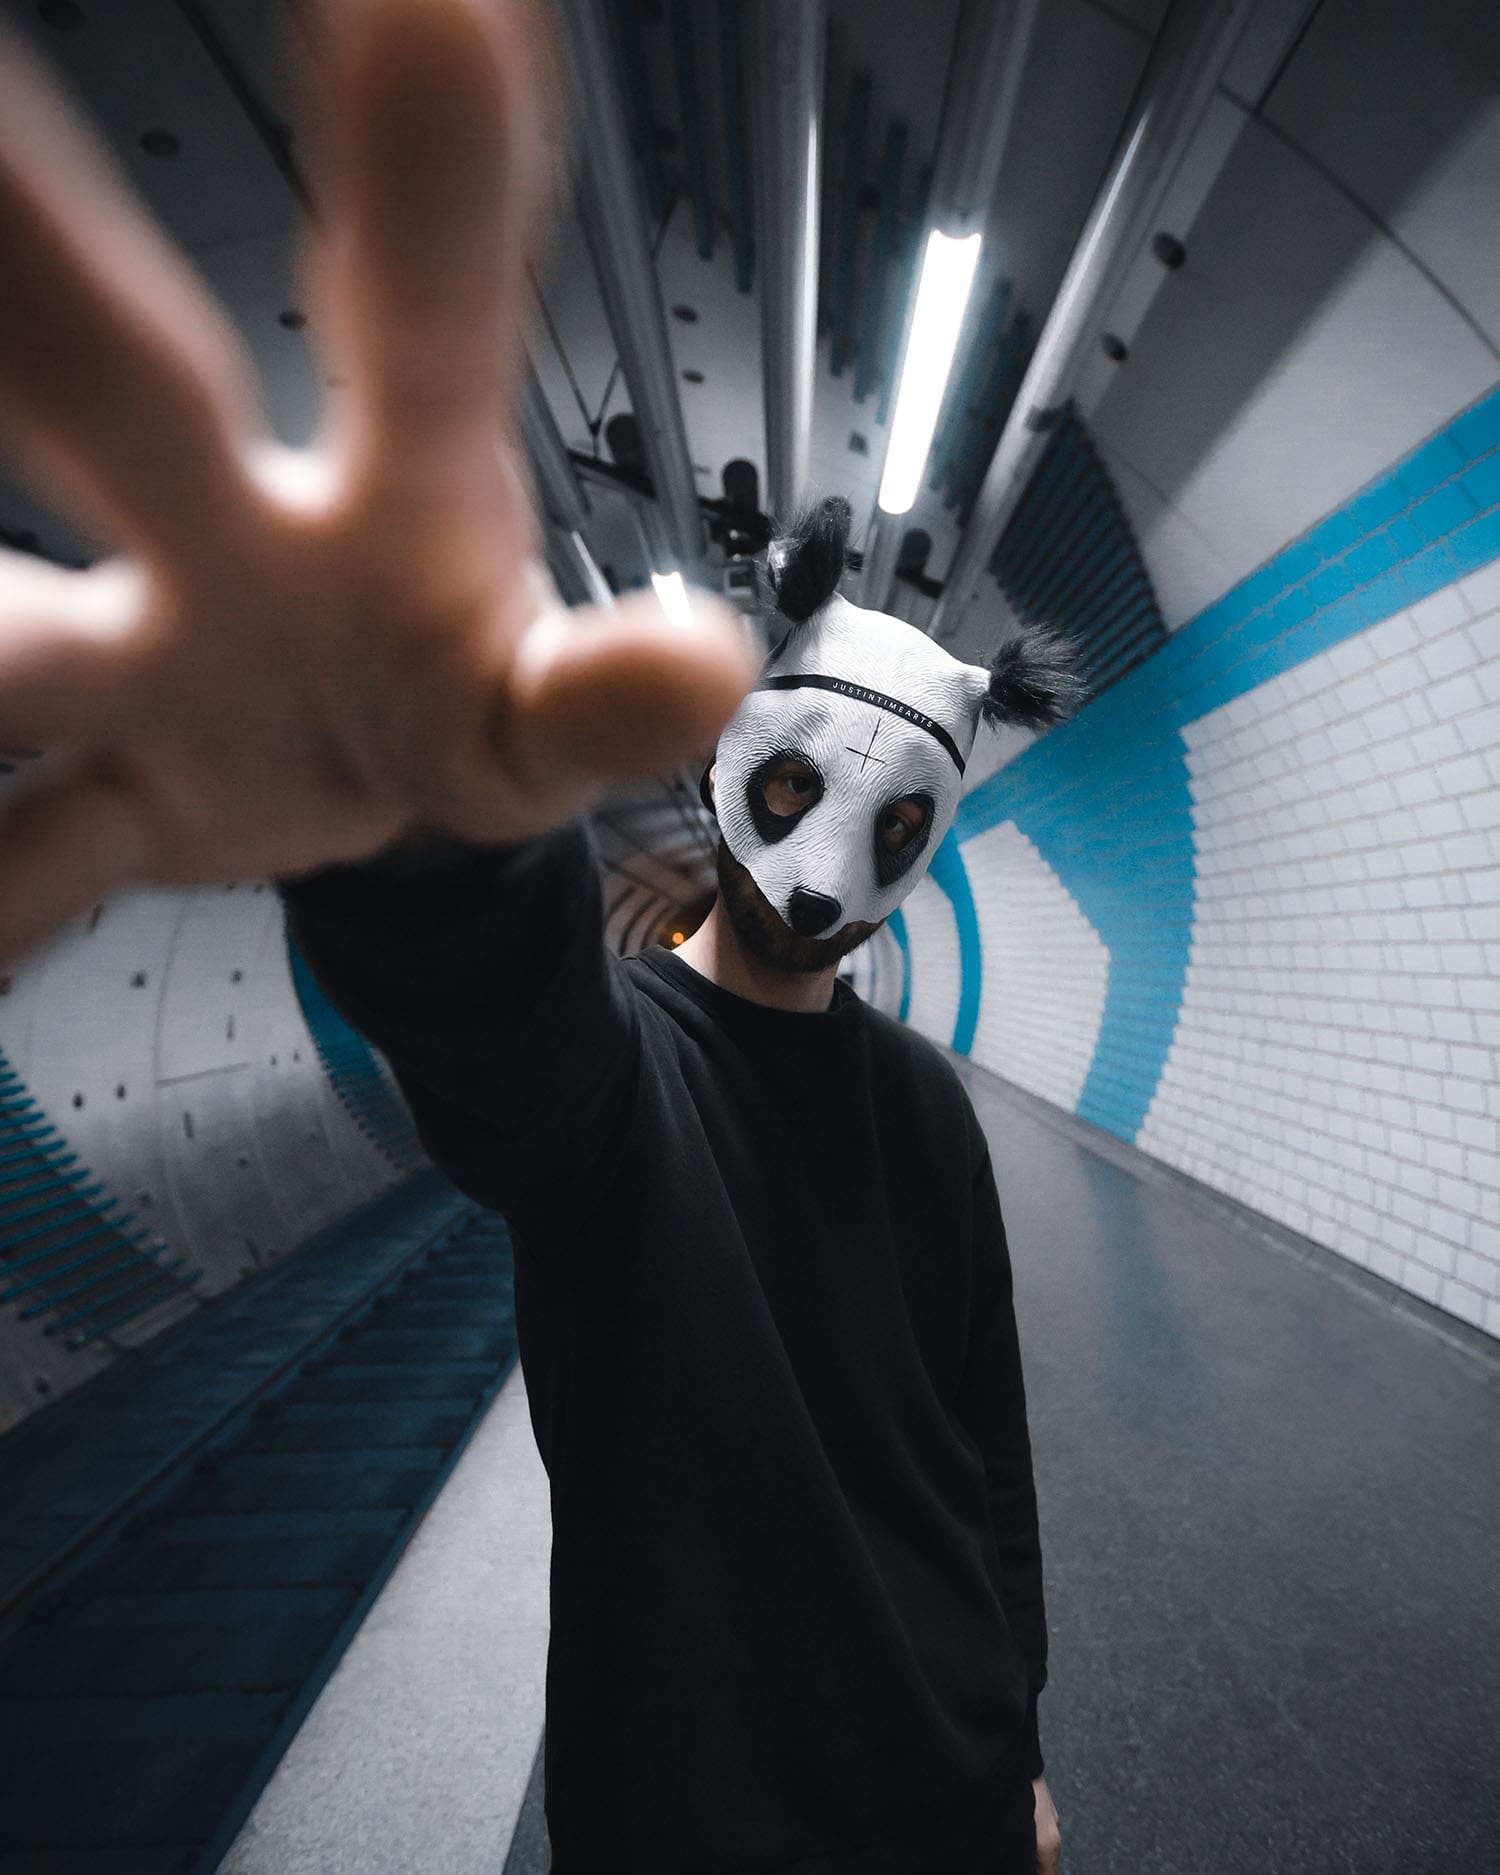 Mann mit Cro Maske in U-Bahn